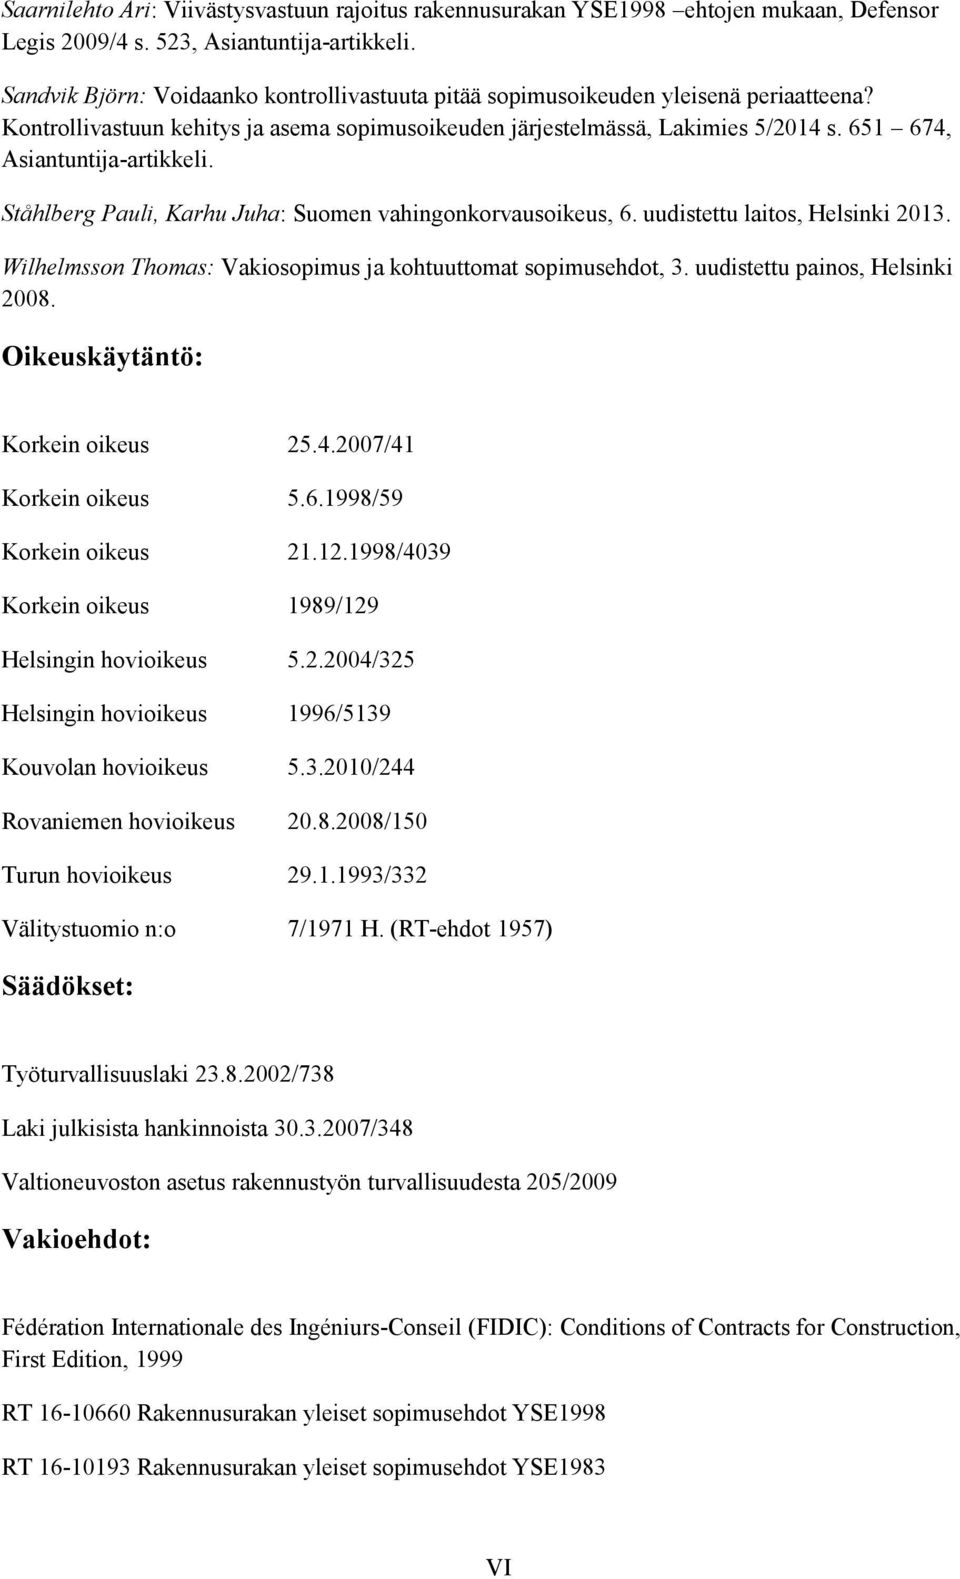 651 674, Asiantuntija-artikkeli. Ståhlberg Pauli, Karhu Juha: Suomen vahingonkorvausoikeus, 6. uudistettu laitos, Helsinki 2013. Wilhelmsson Thomas: Vakiosopimus ja kohtuuttomat sopimusehdot, 3.